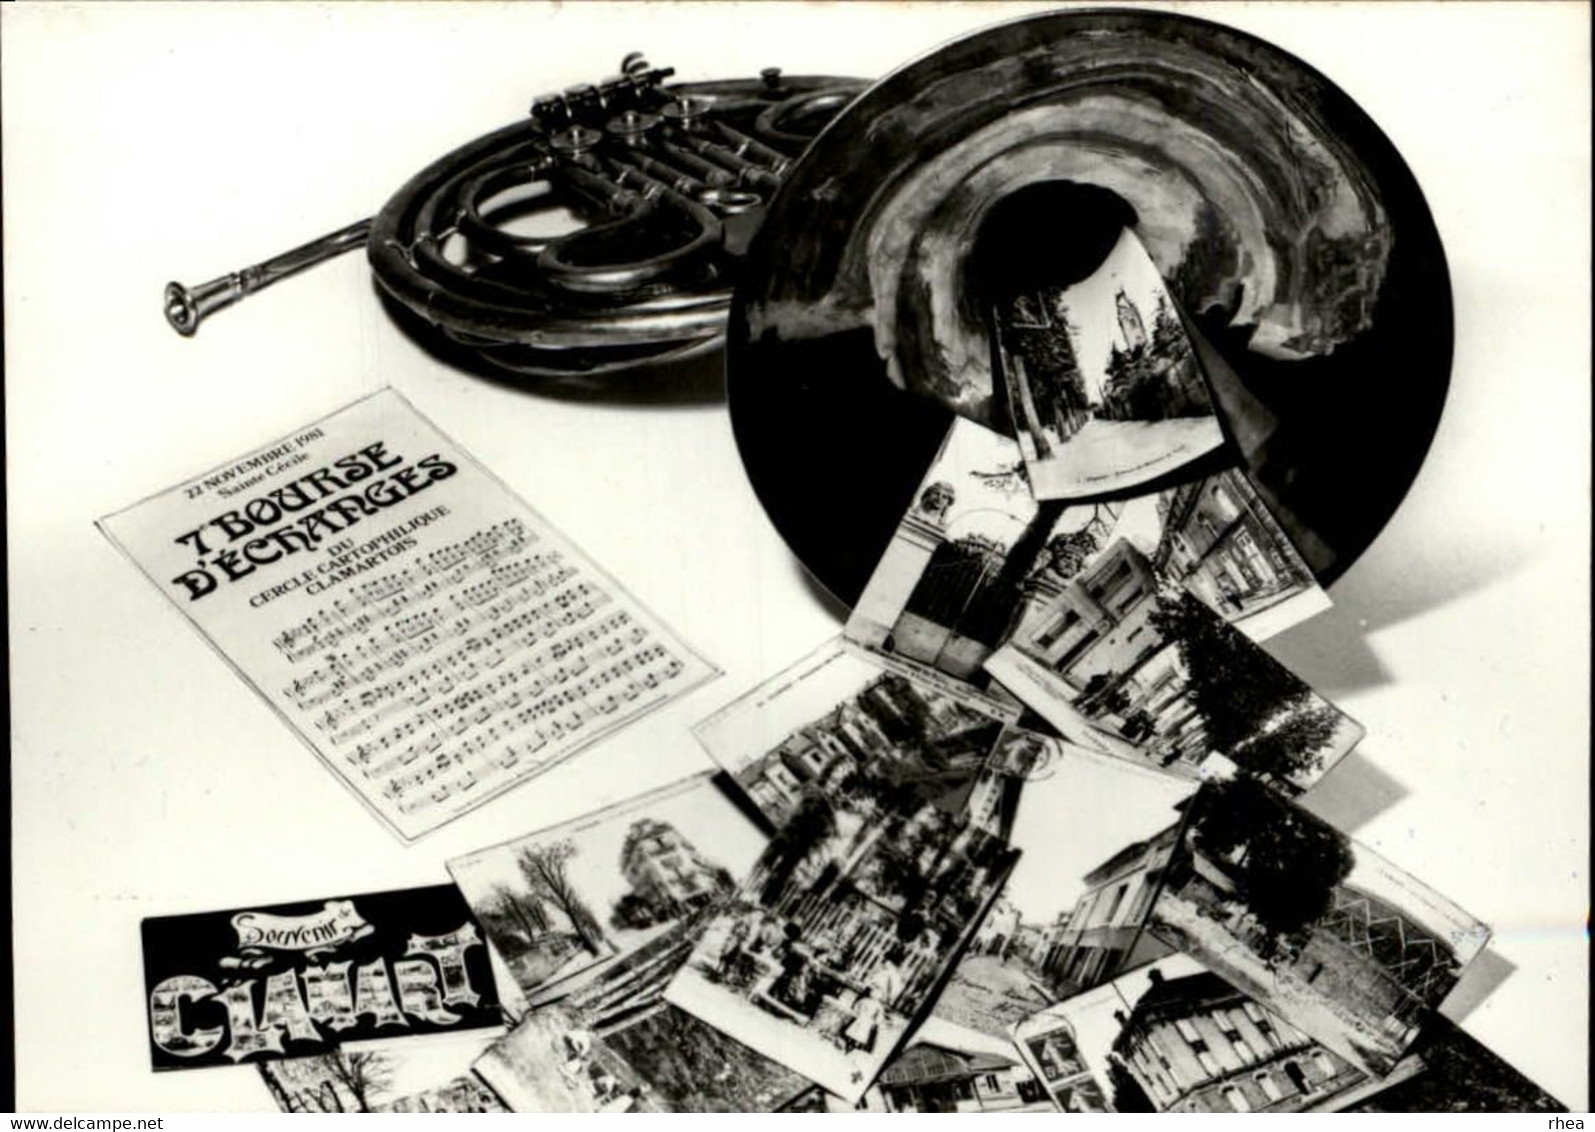 SALONS DE COLLECTIONS - Bourse D'échanges - Salon De Cartes Postales - Clarmart - Dessin De Babigeon - 1981 - Bourses & Salons De Collections